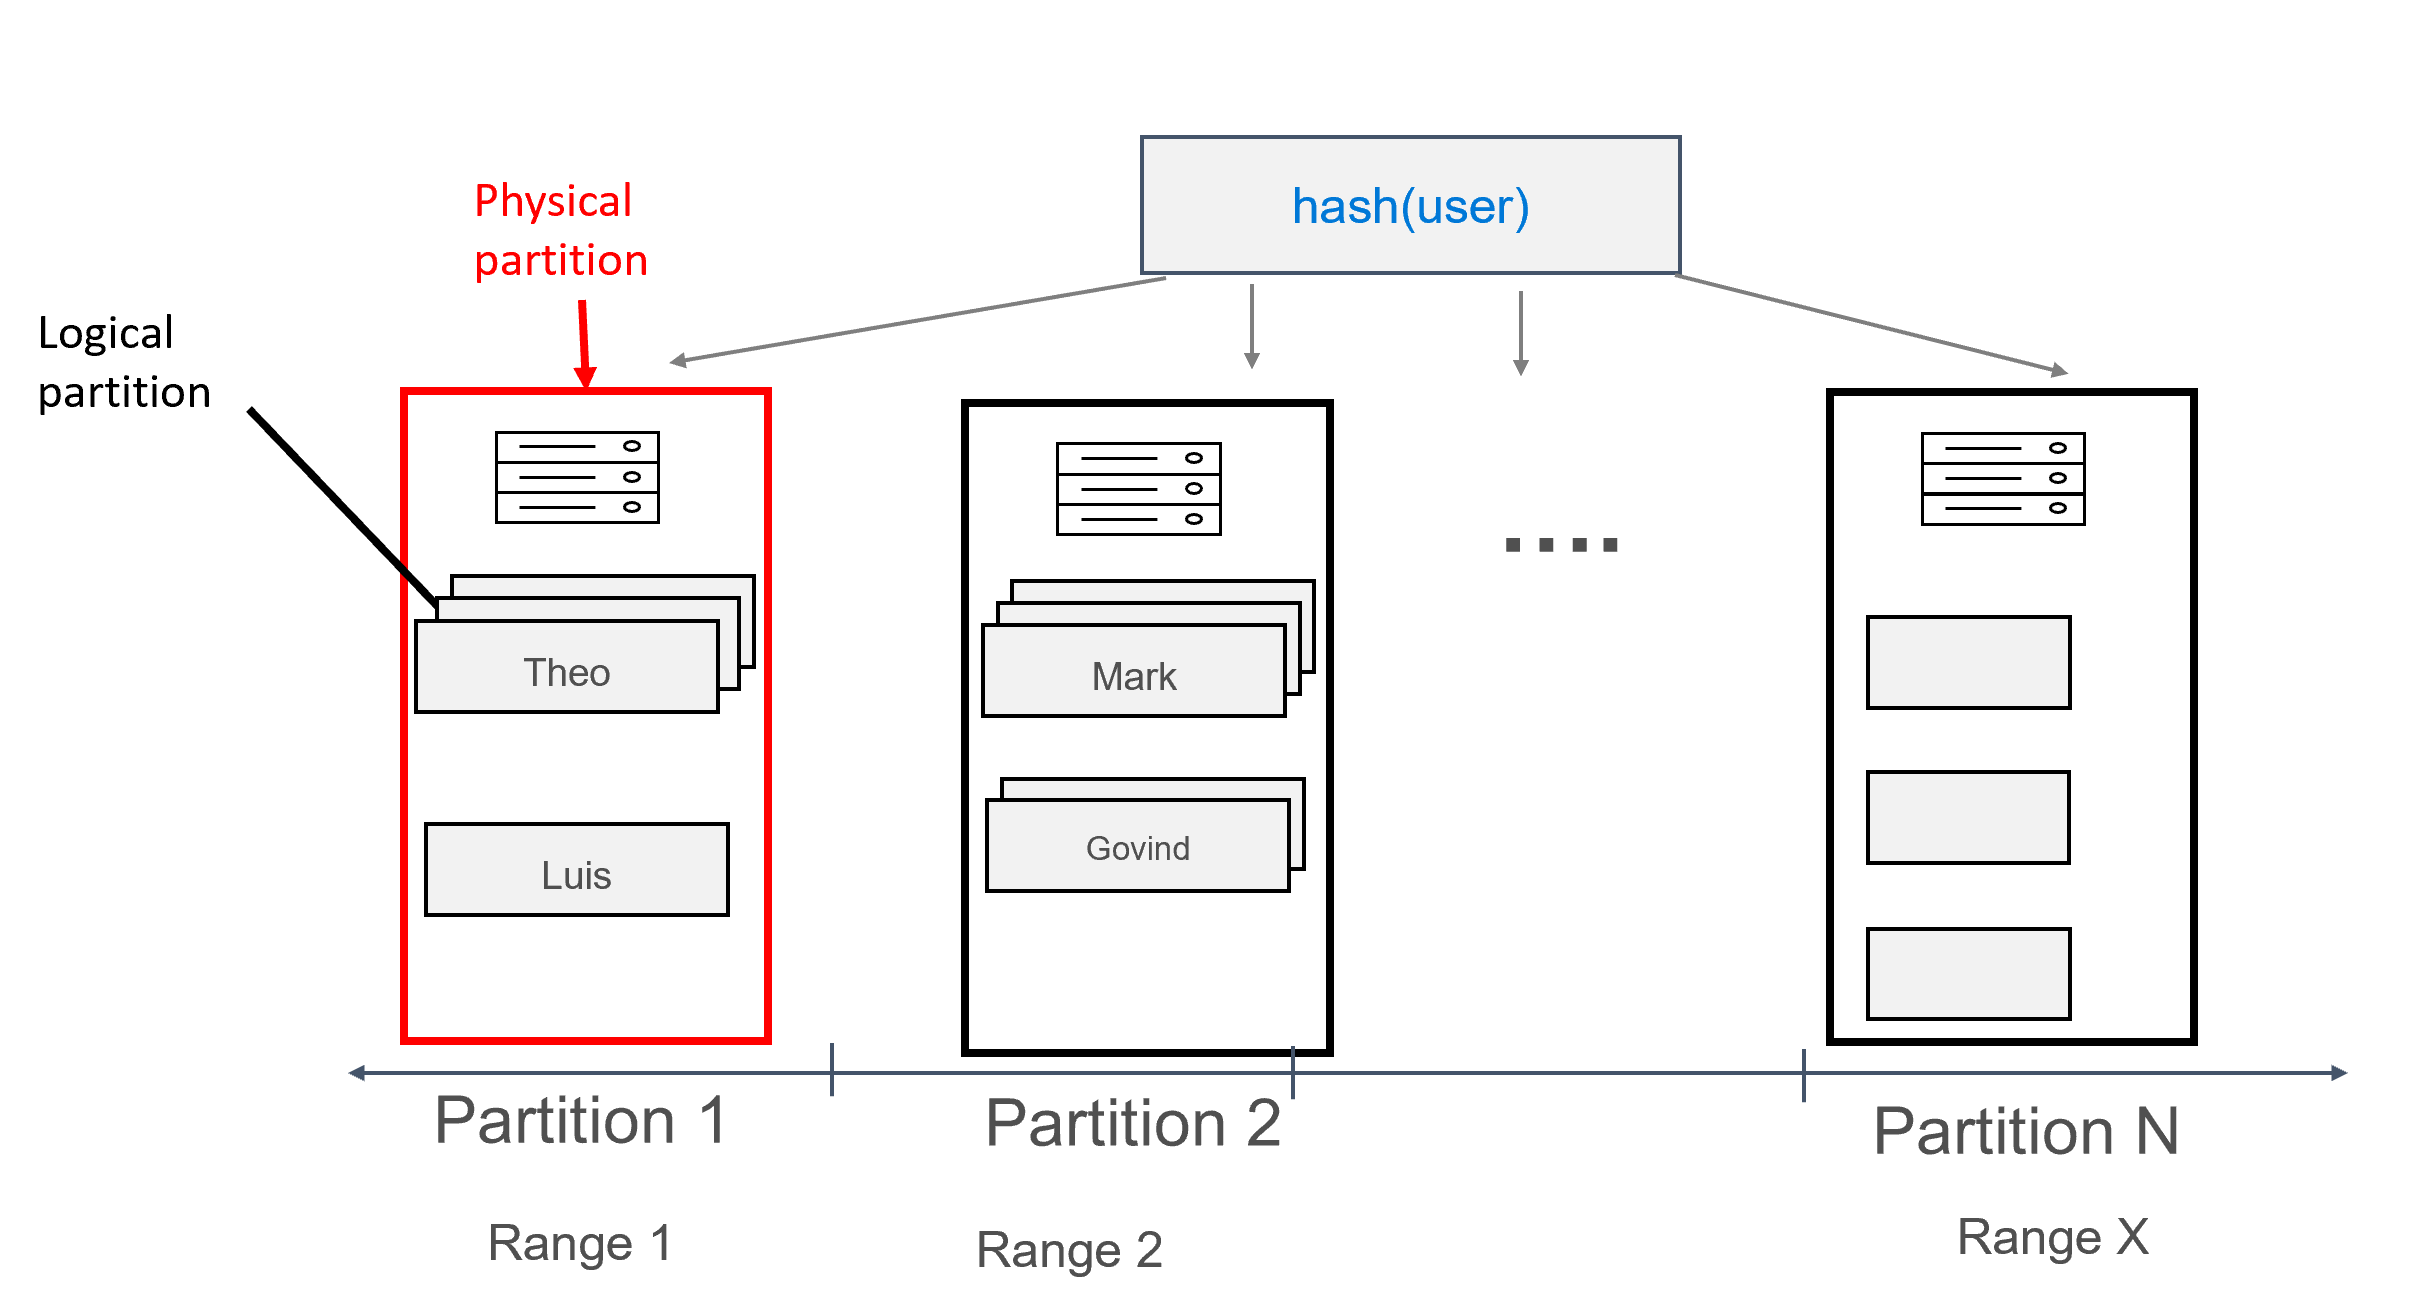 Diagramme montrant comment plusieurs enregistrements peuvent être attribués à chaque partition, regroupés par utilisateur.